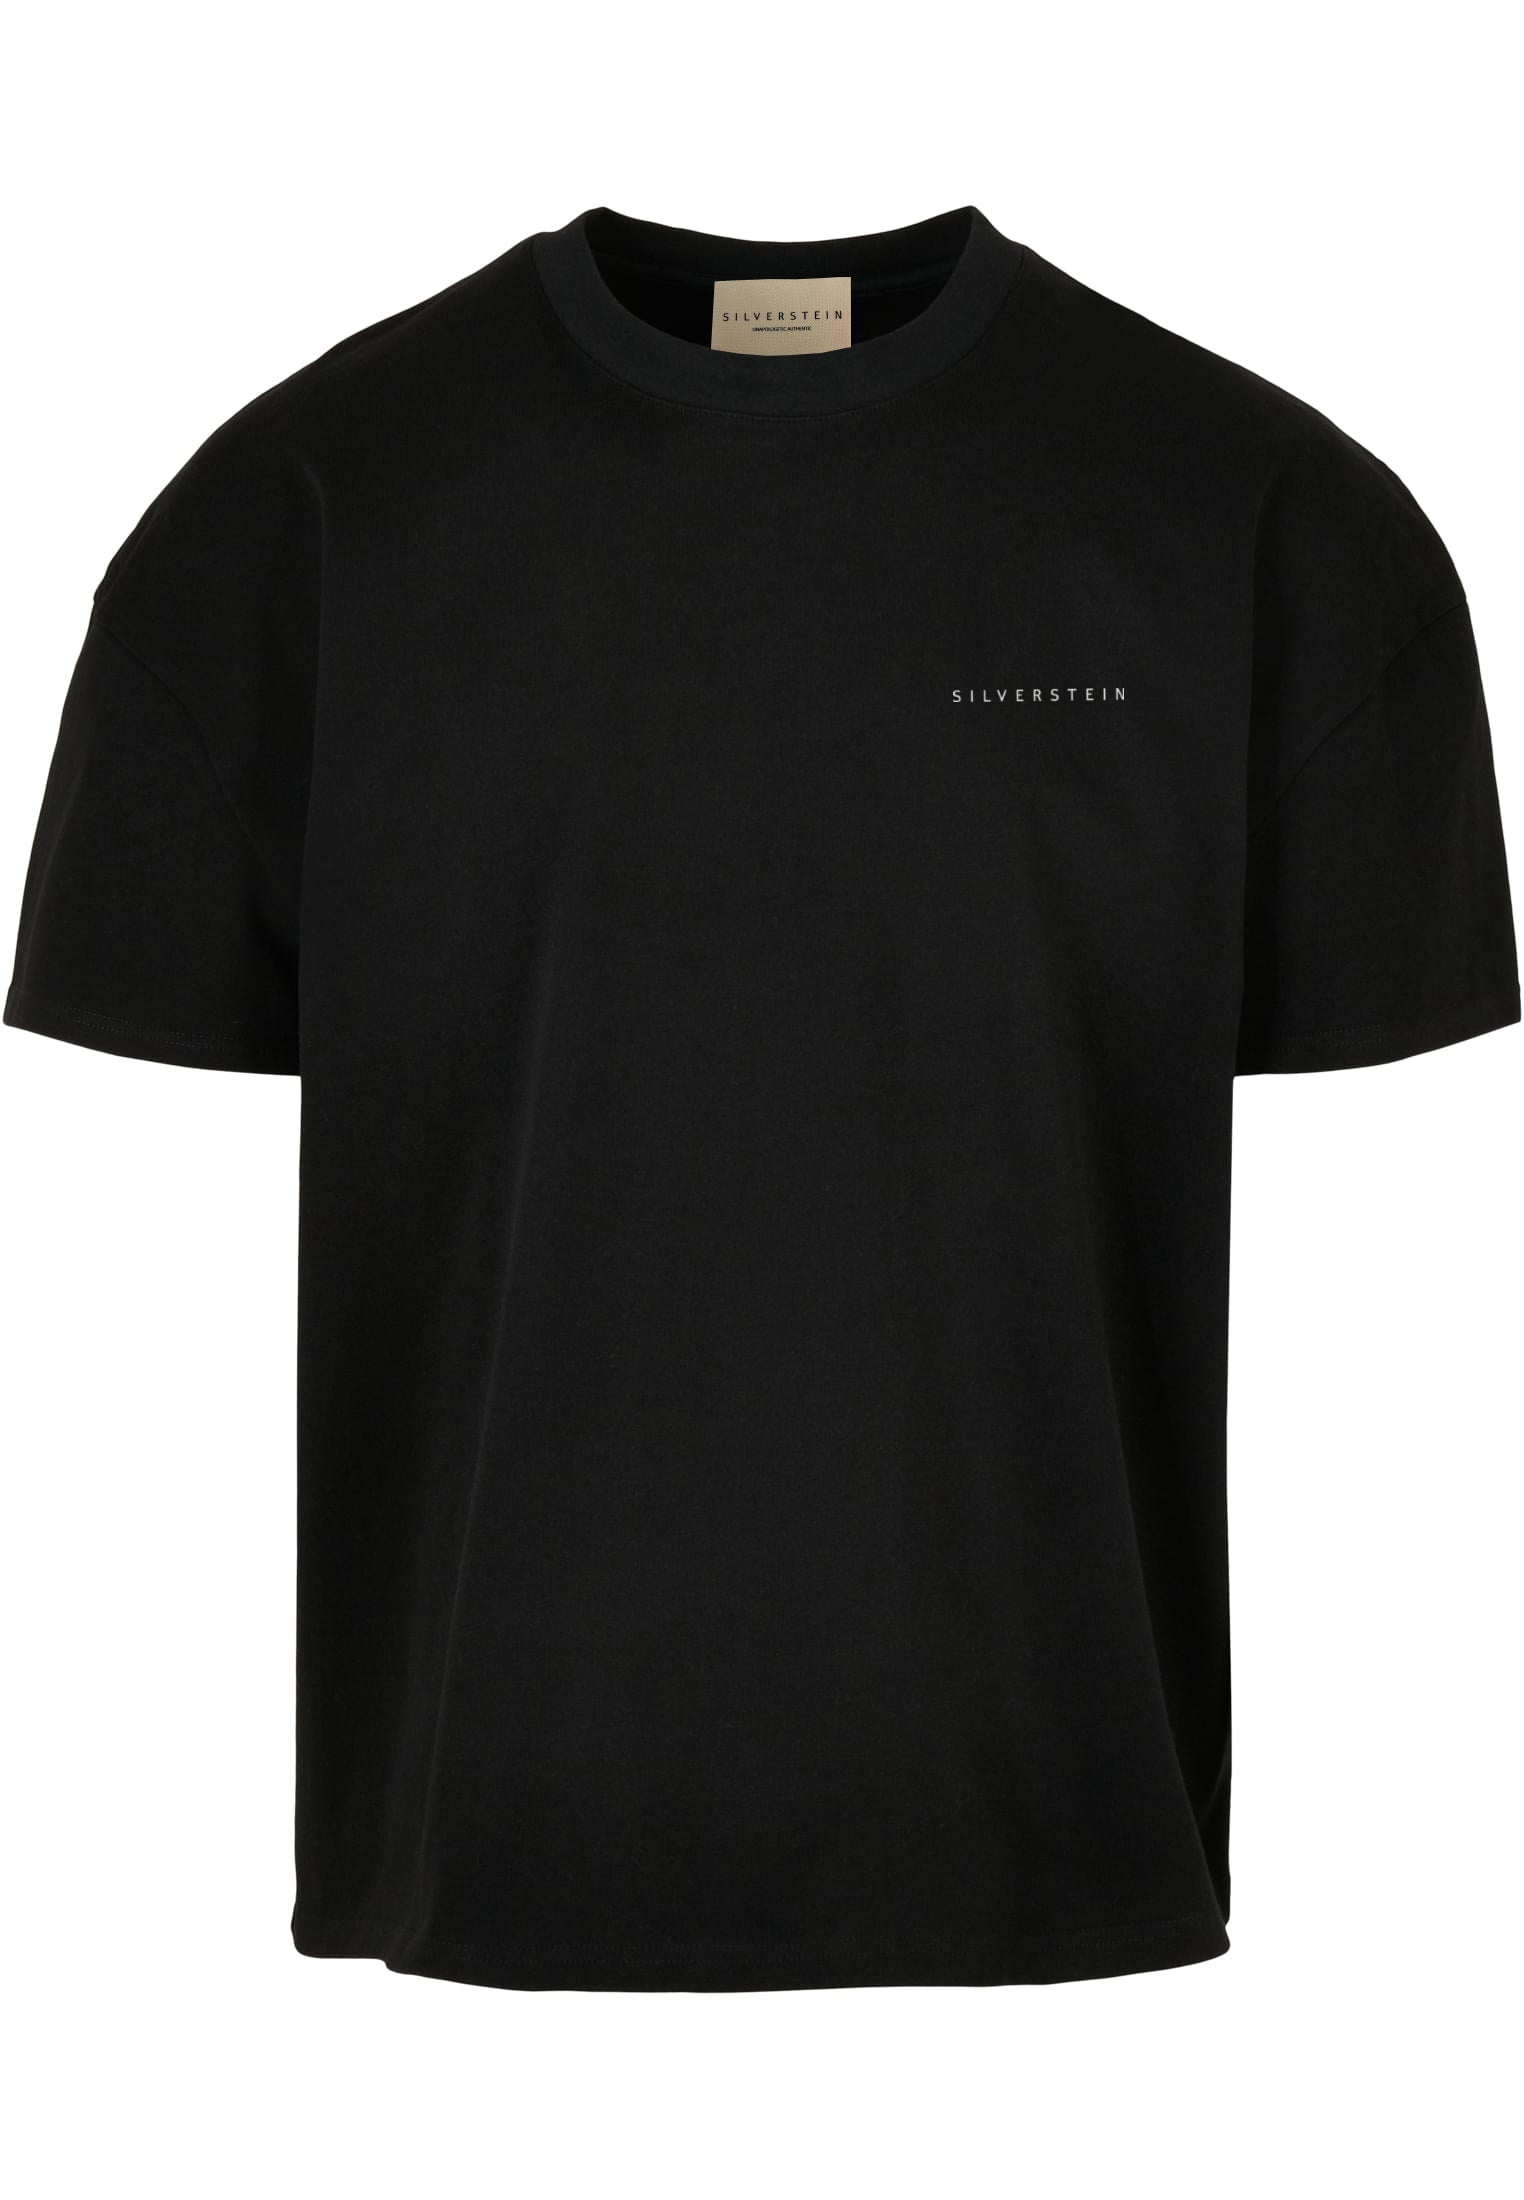 Black "Teddy Watch" Unisex T-Shirt